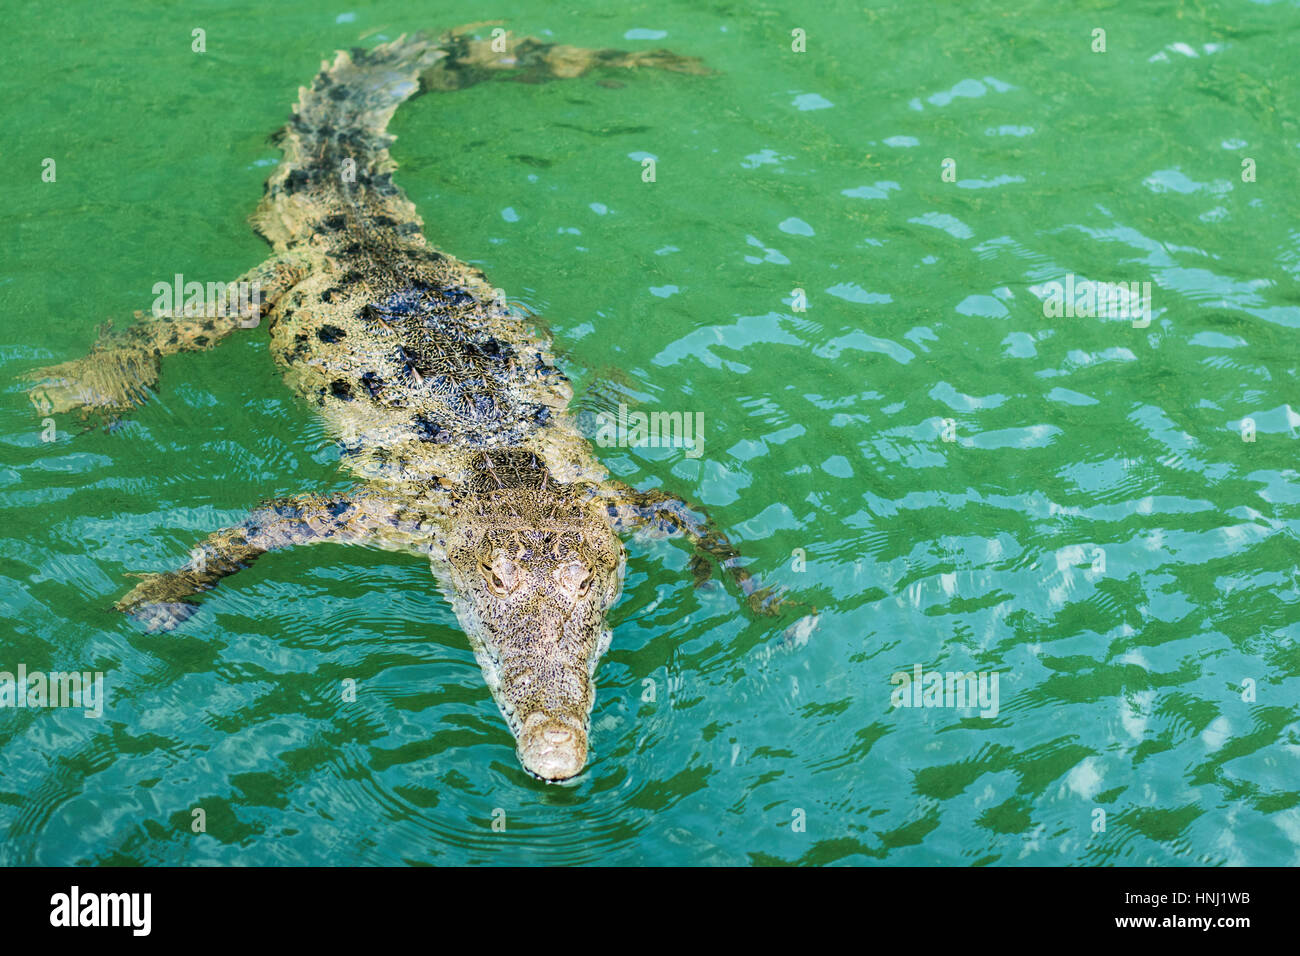 Crocodile swimming in Black river, Jamaica Stock Photo